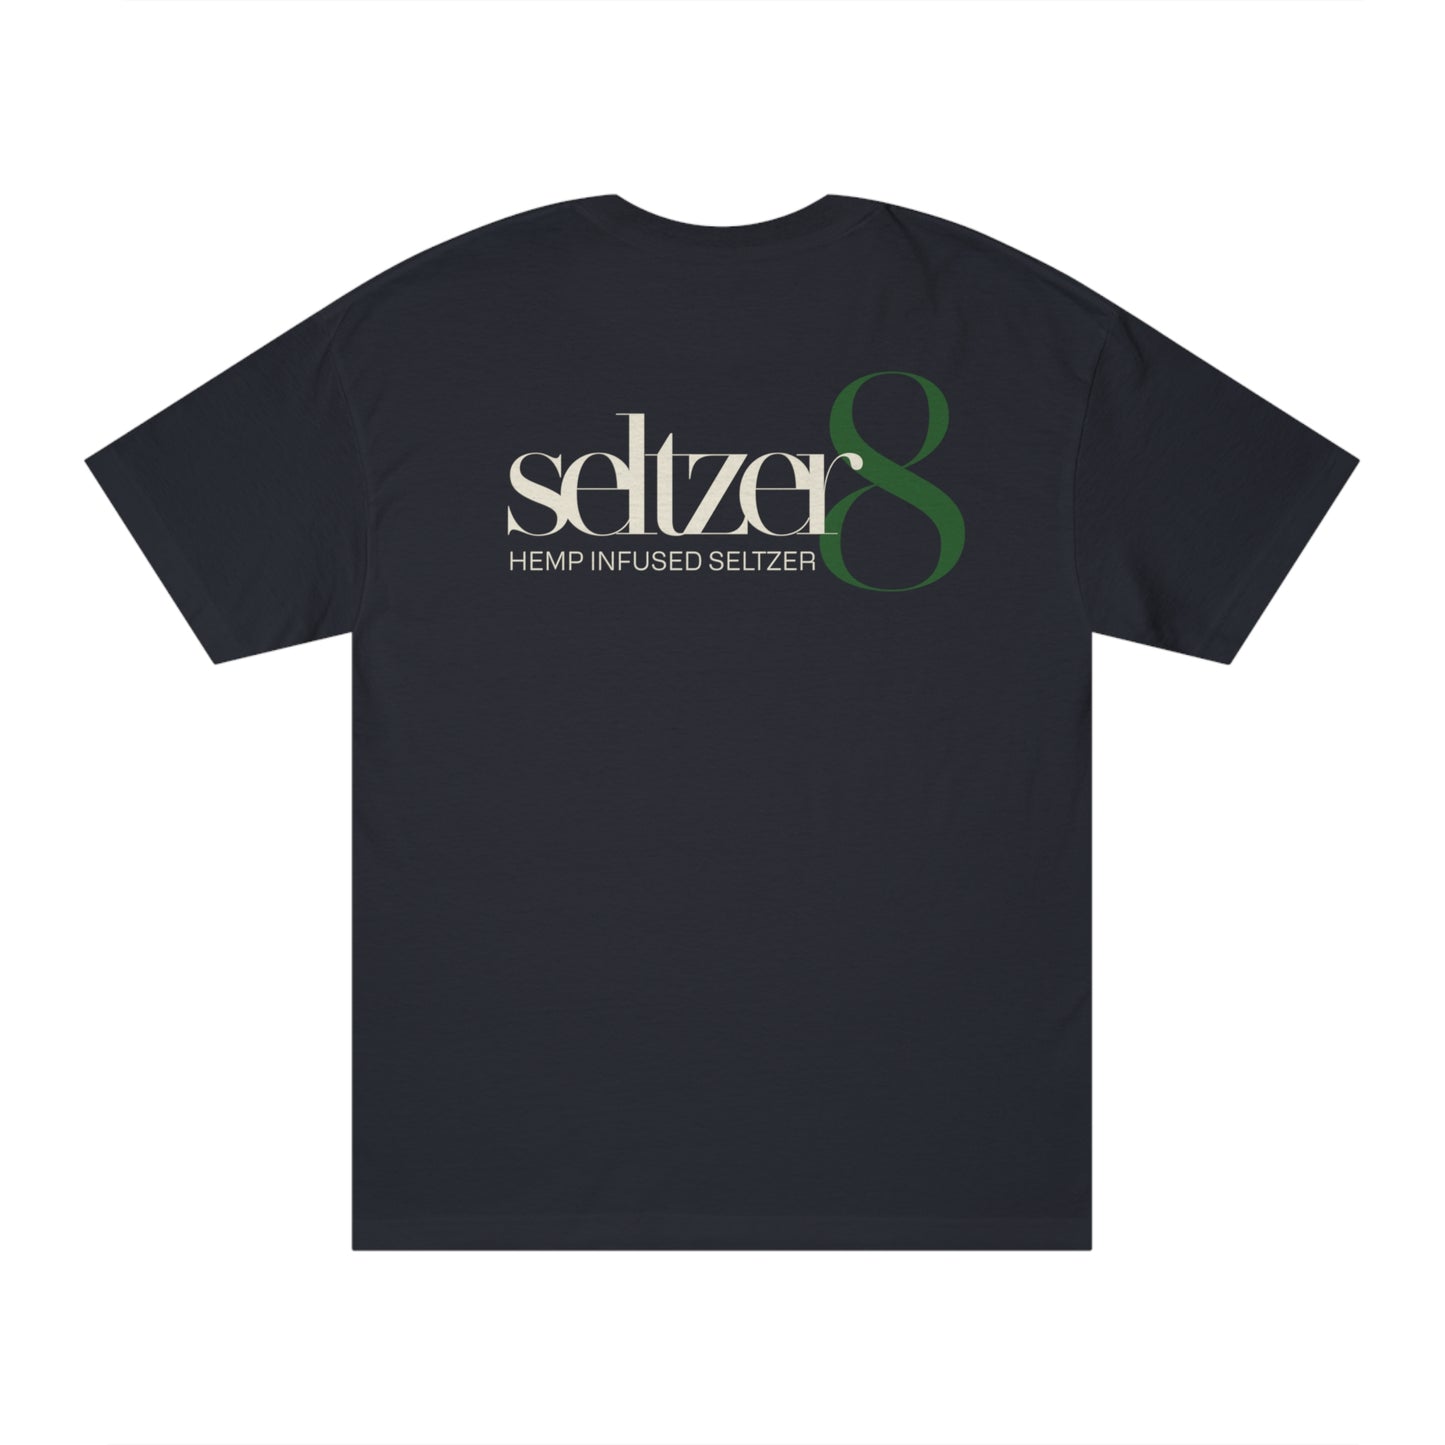 Seltzer 8 American Apparel Camiseta clásica unisex